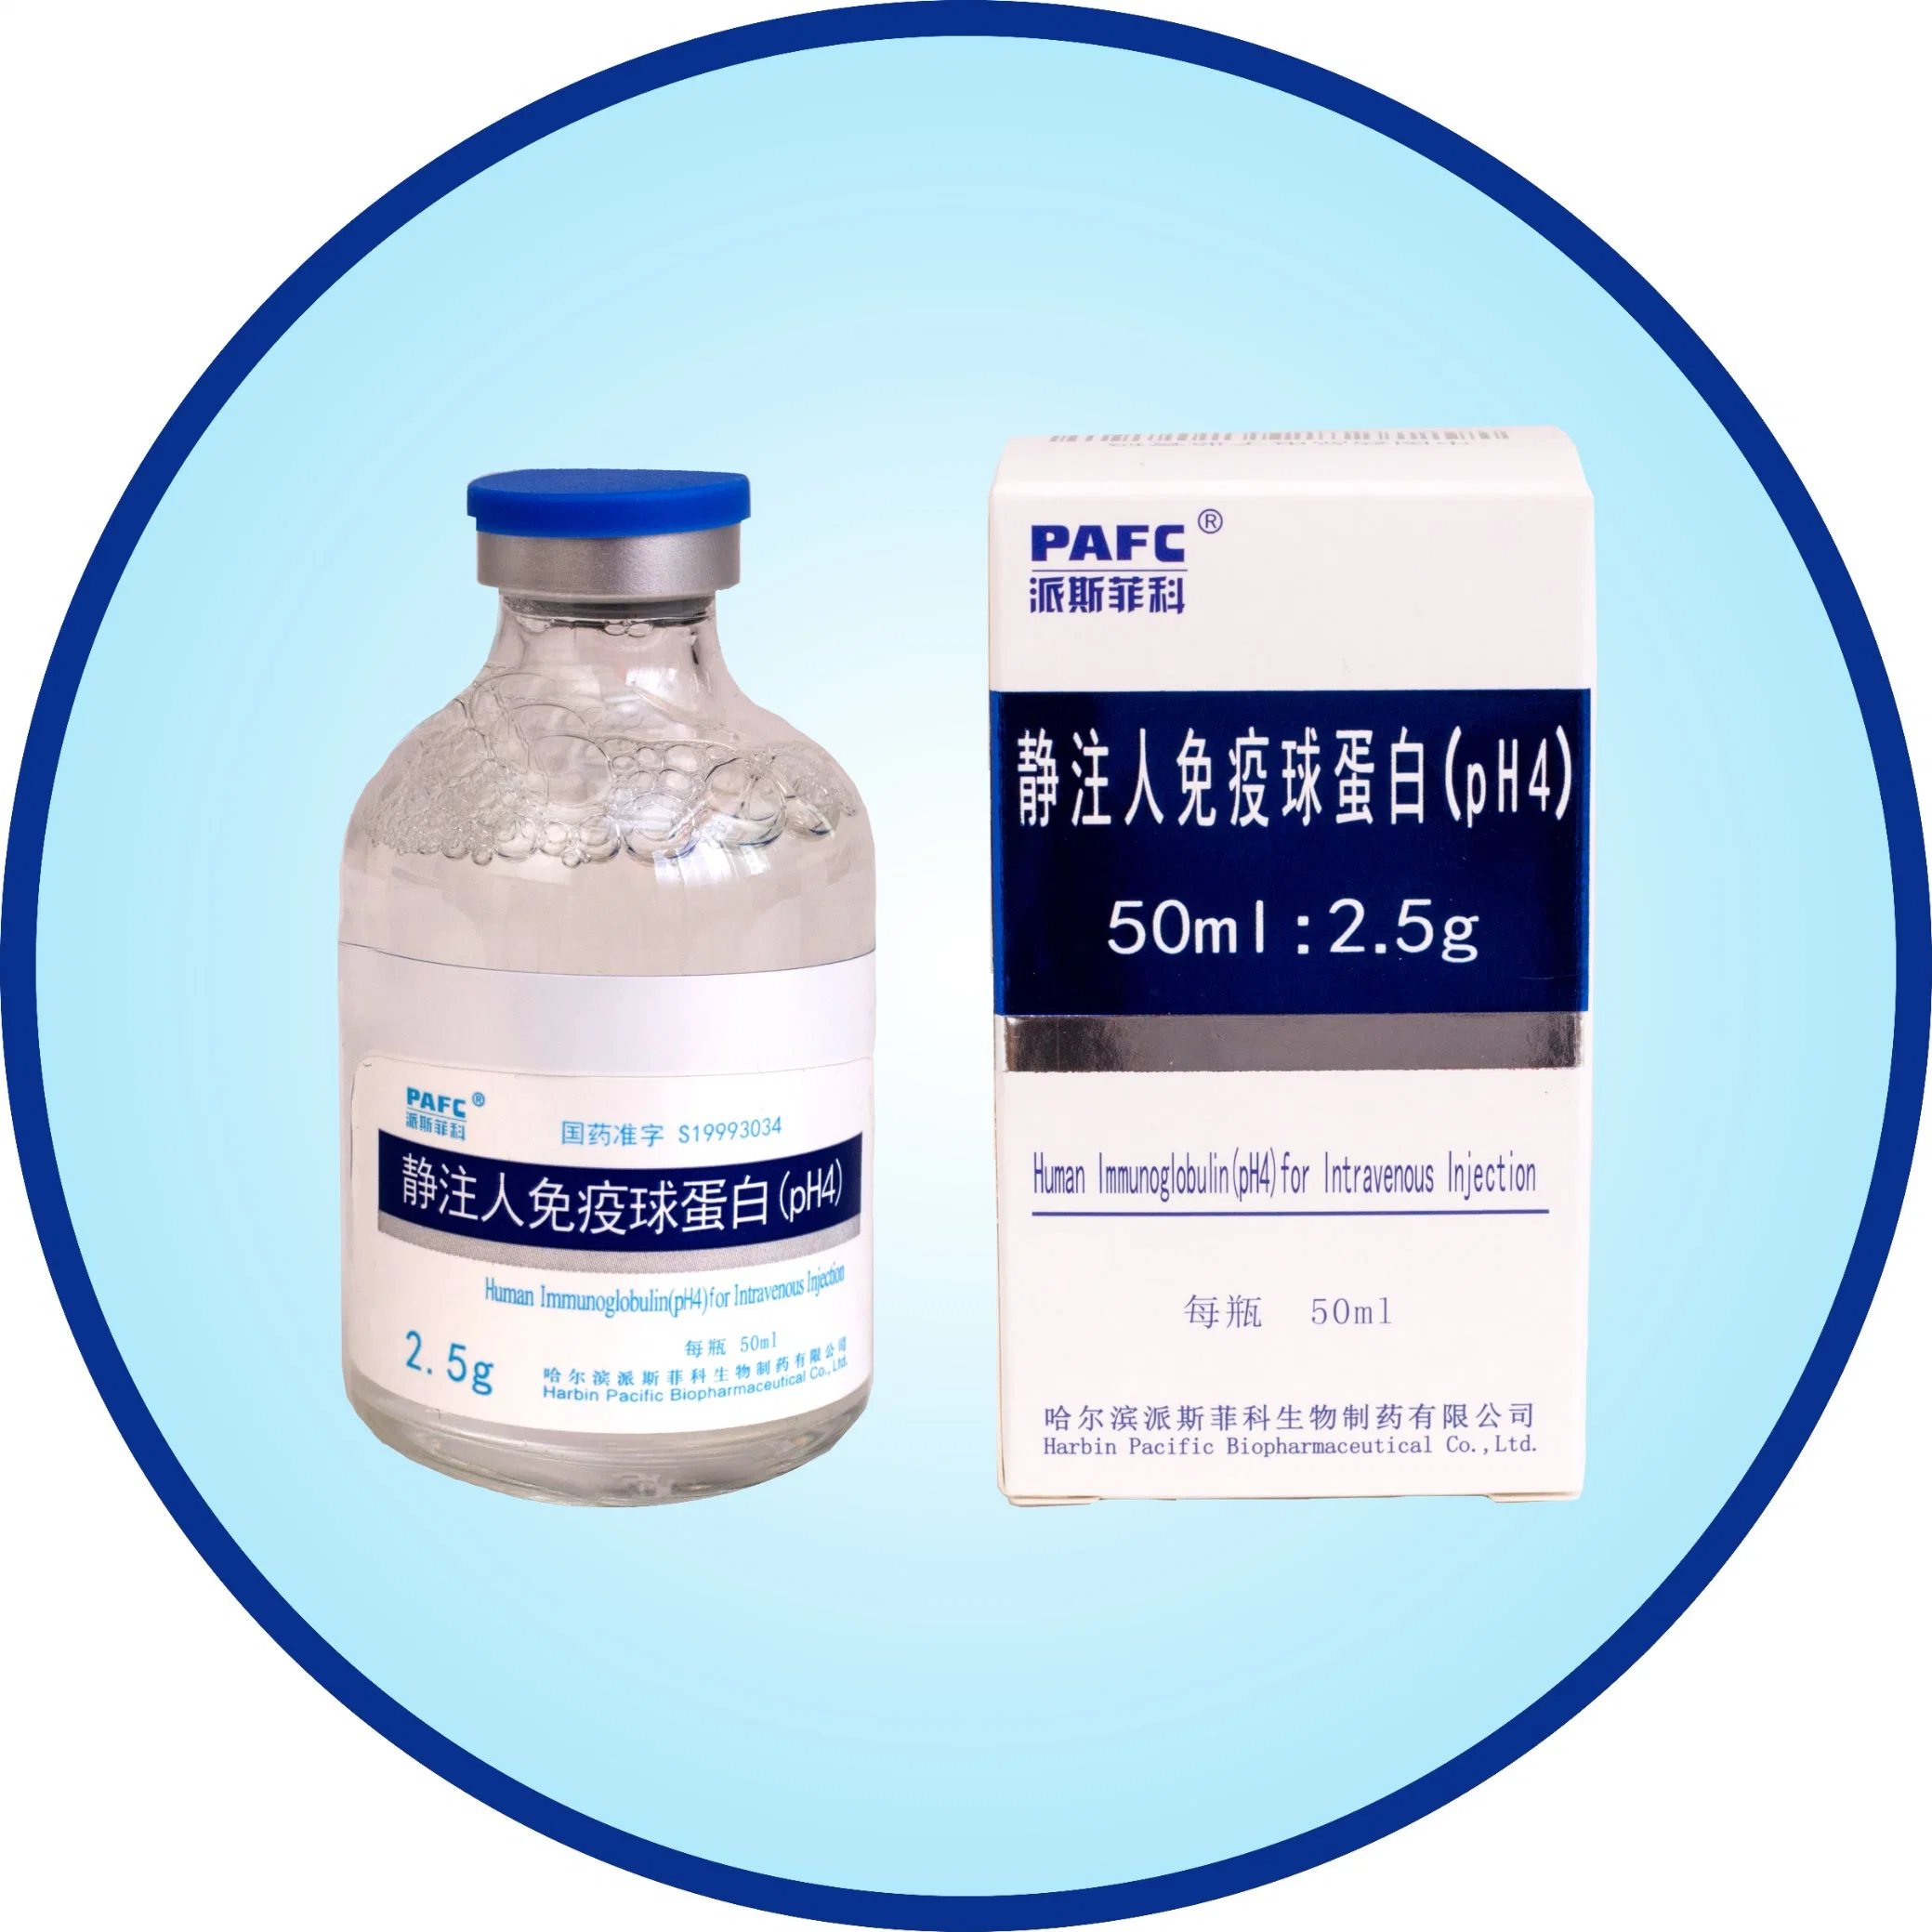 Produto biológico para melhorar a imunoglobulina Immunity-Human (pH4) para a injeção intravenosa